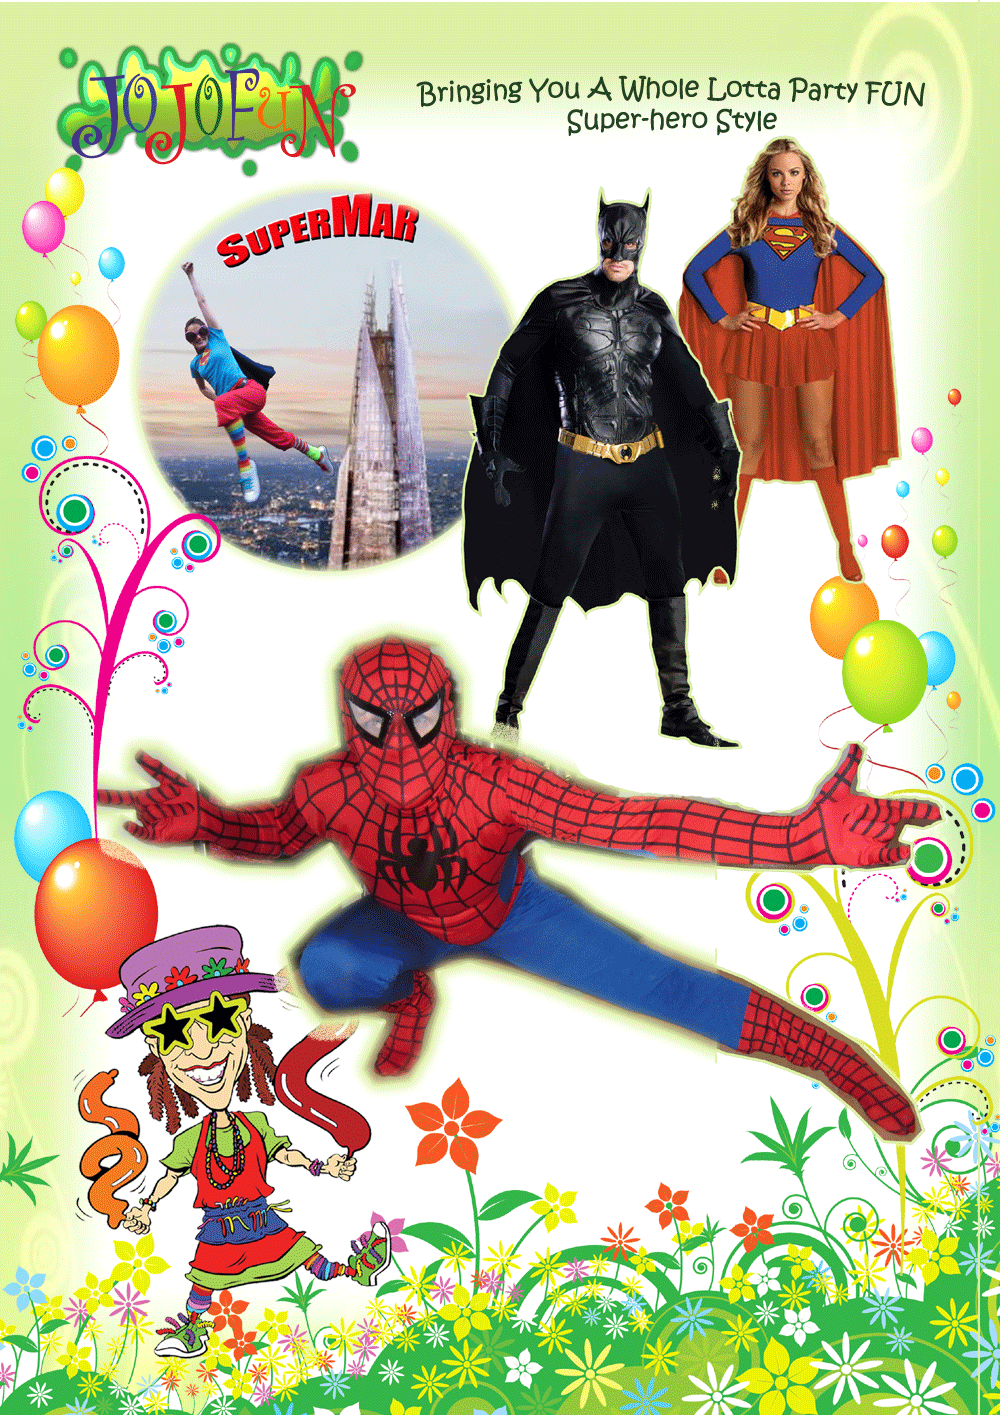 Superhero party theme